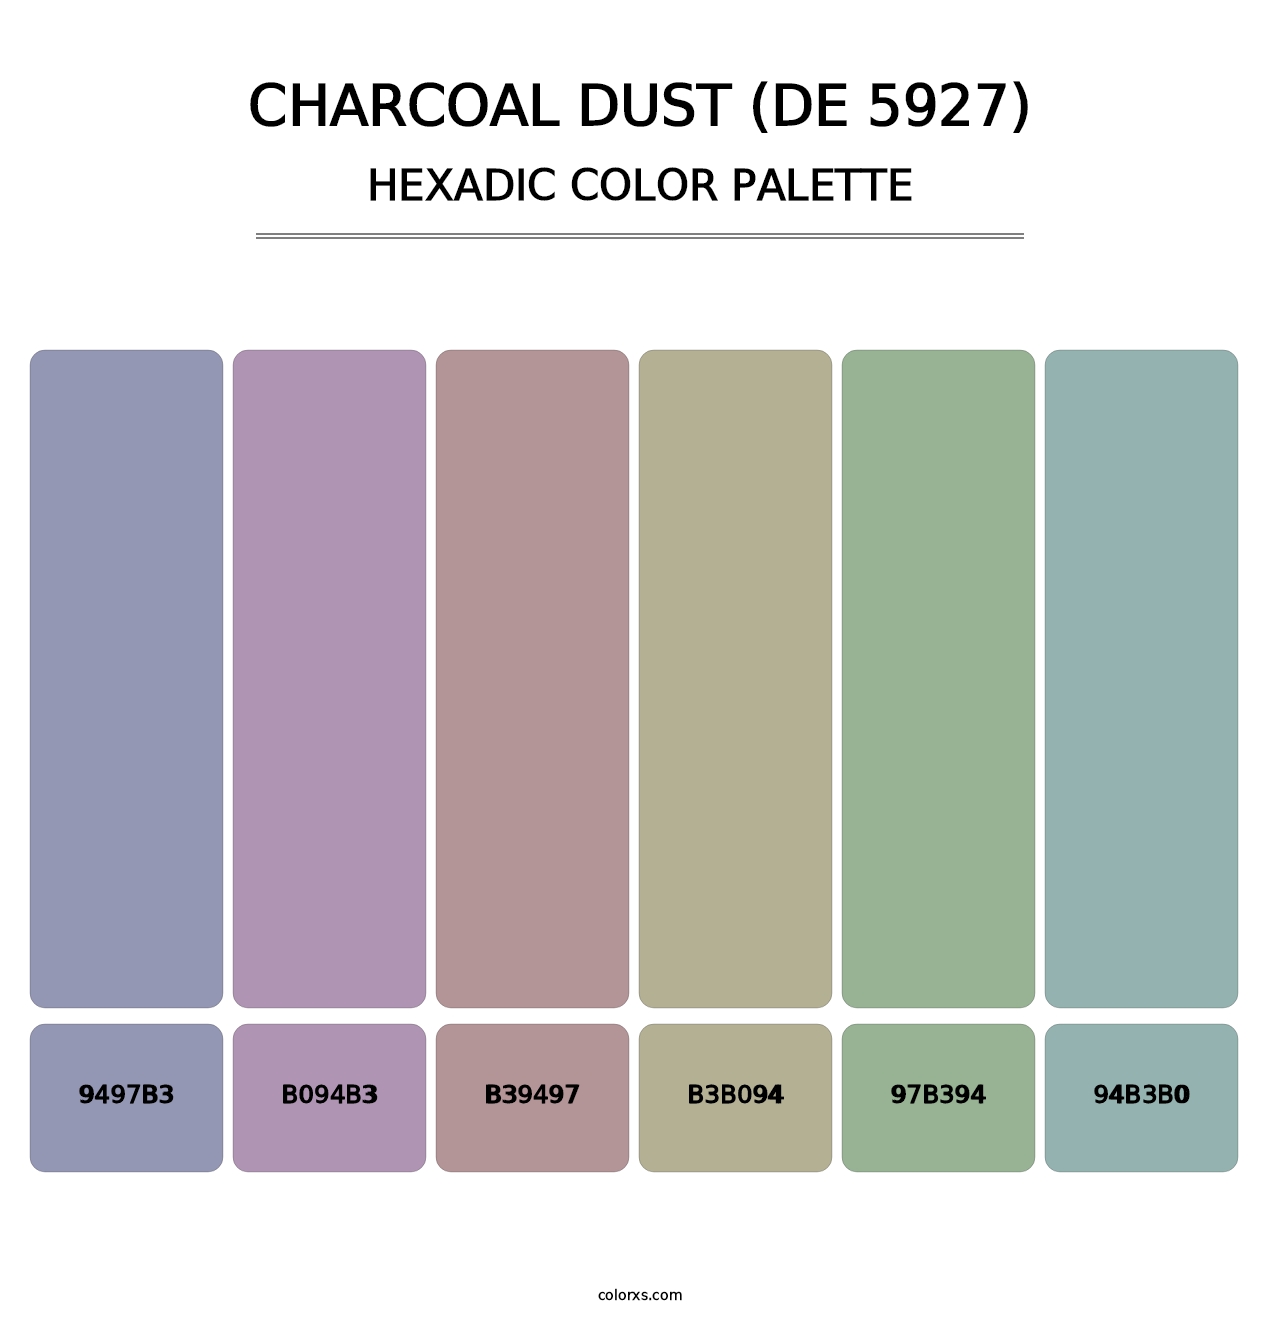 Charcoal Dust (DE 5927) - Hexadic Color Palette